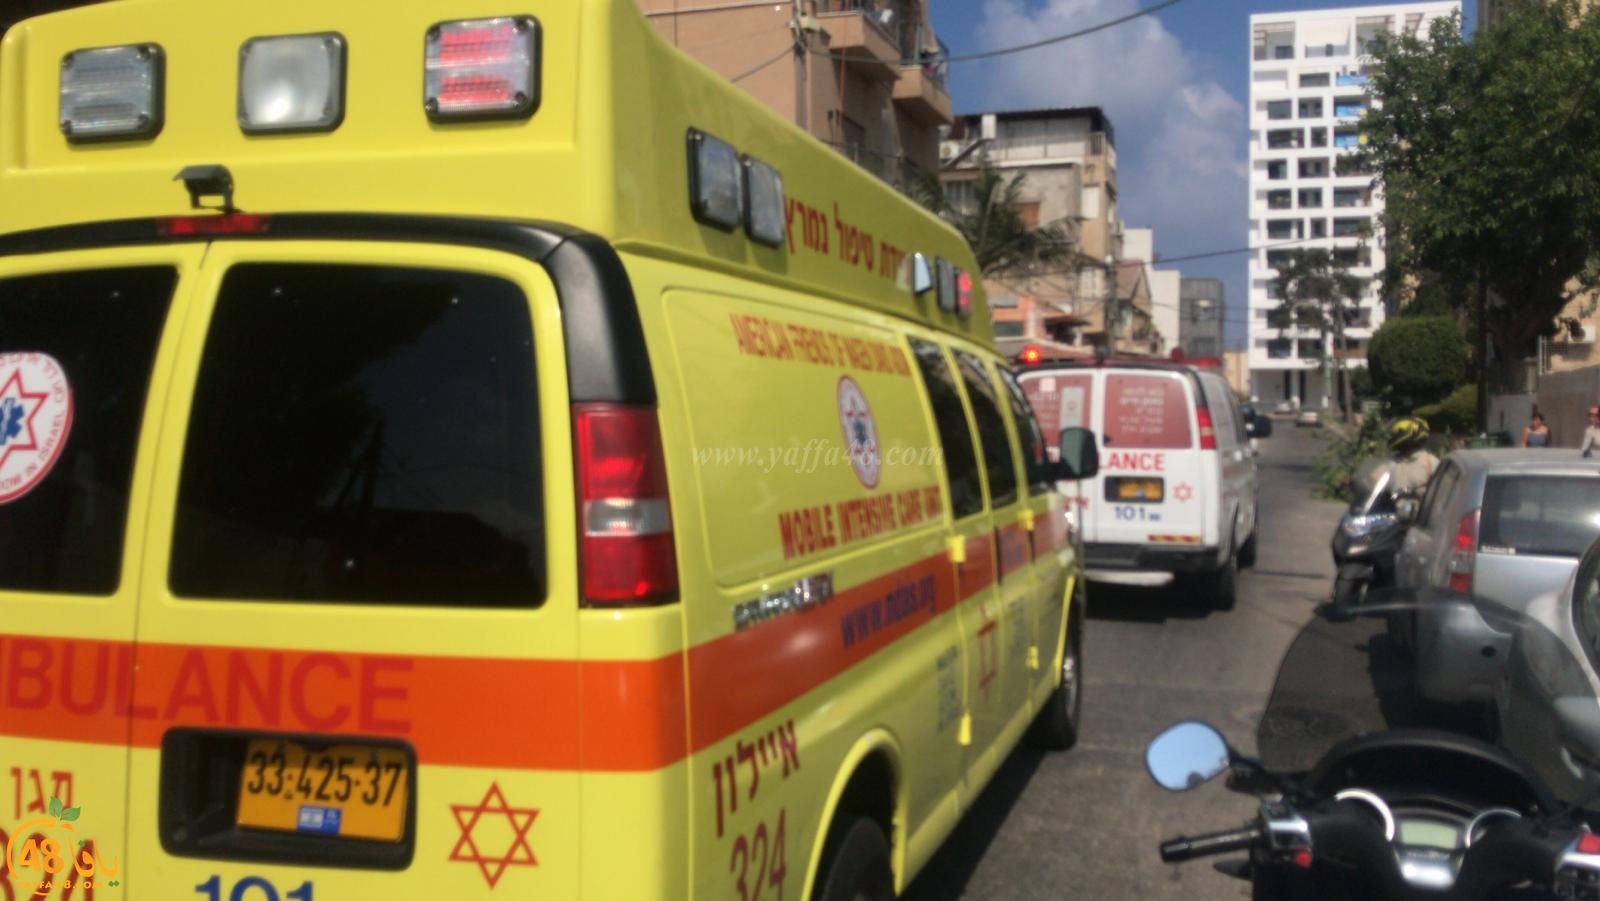  يافا: إصابة خطرة لشخص اثر سقوطه من علو بالمدينة 